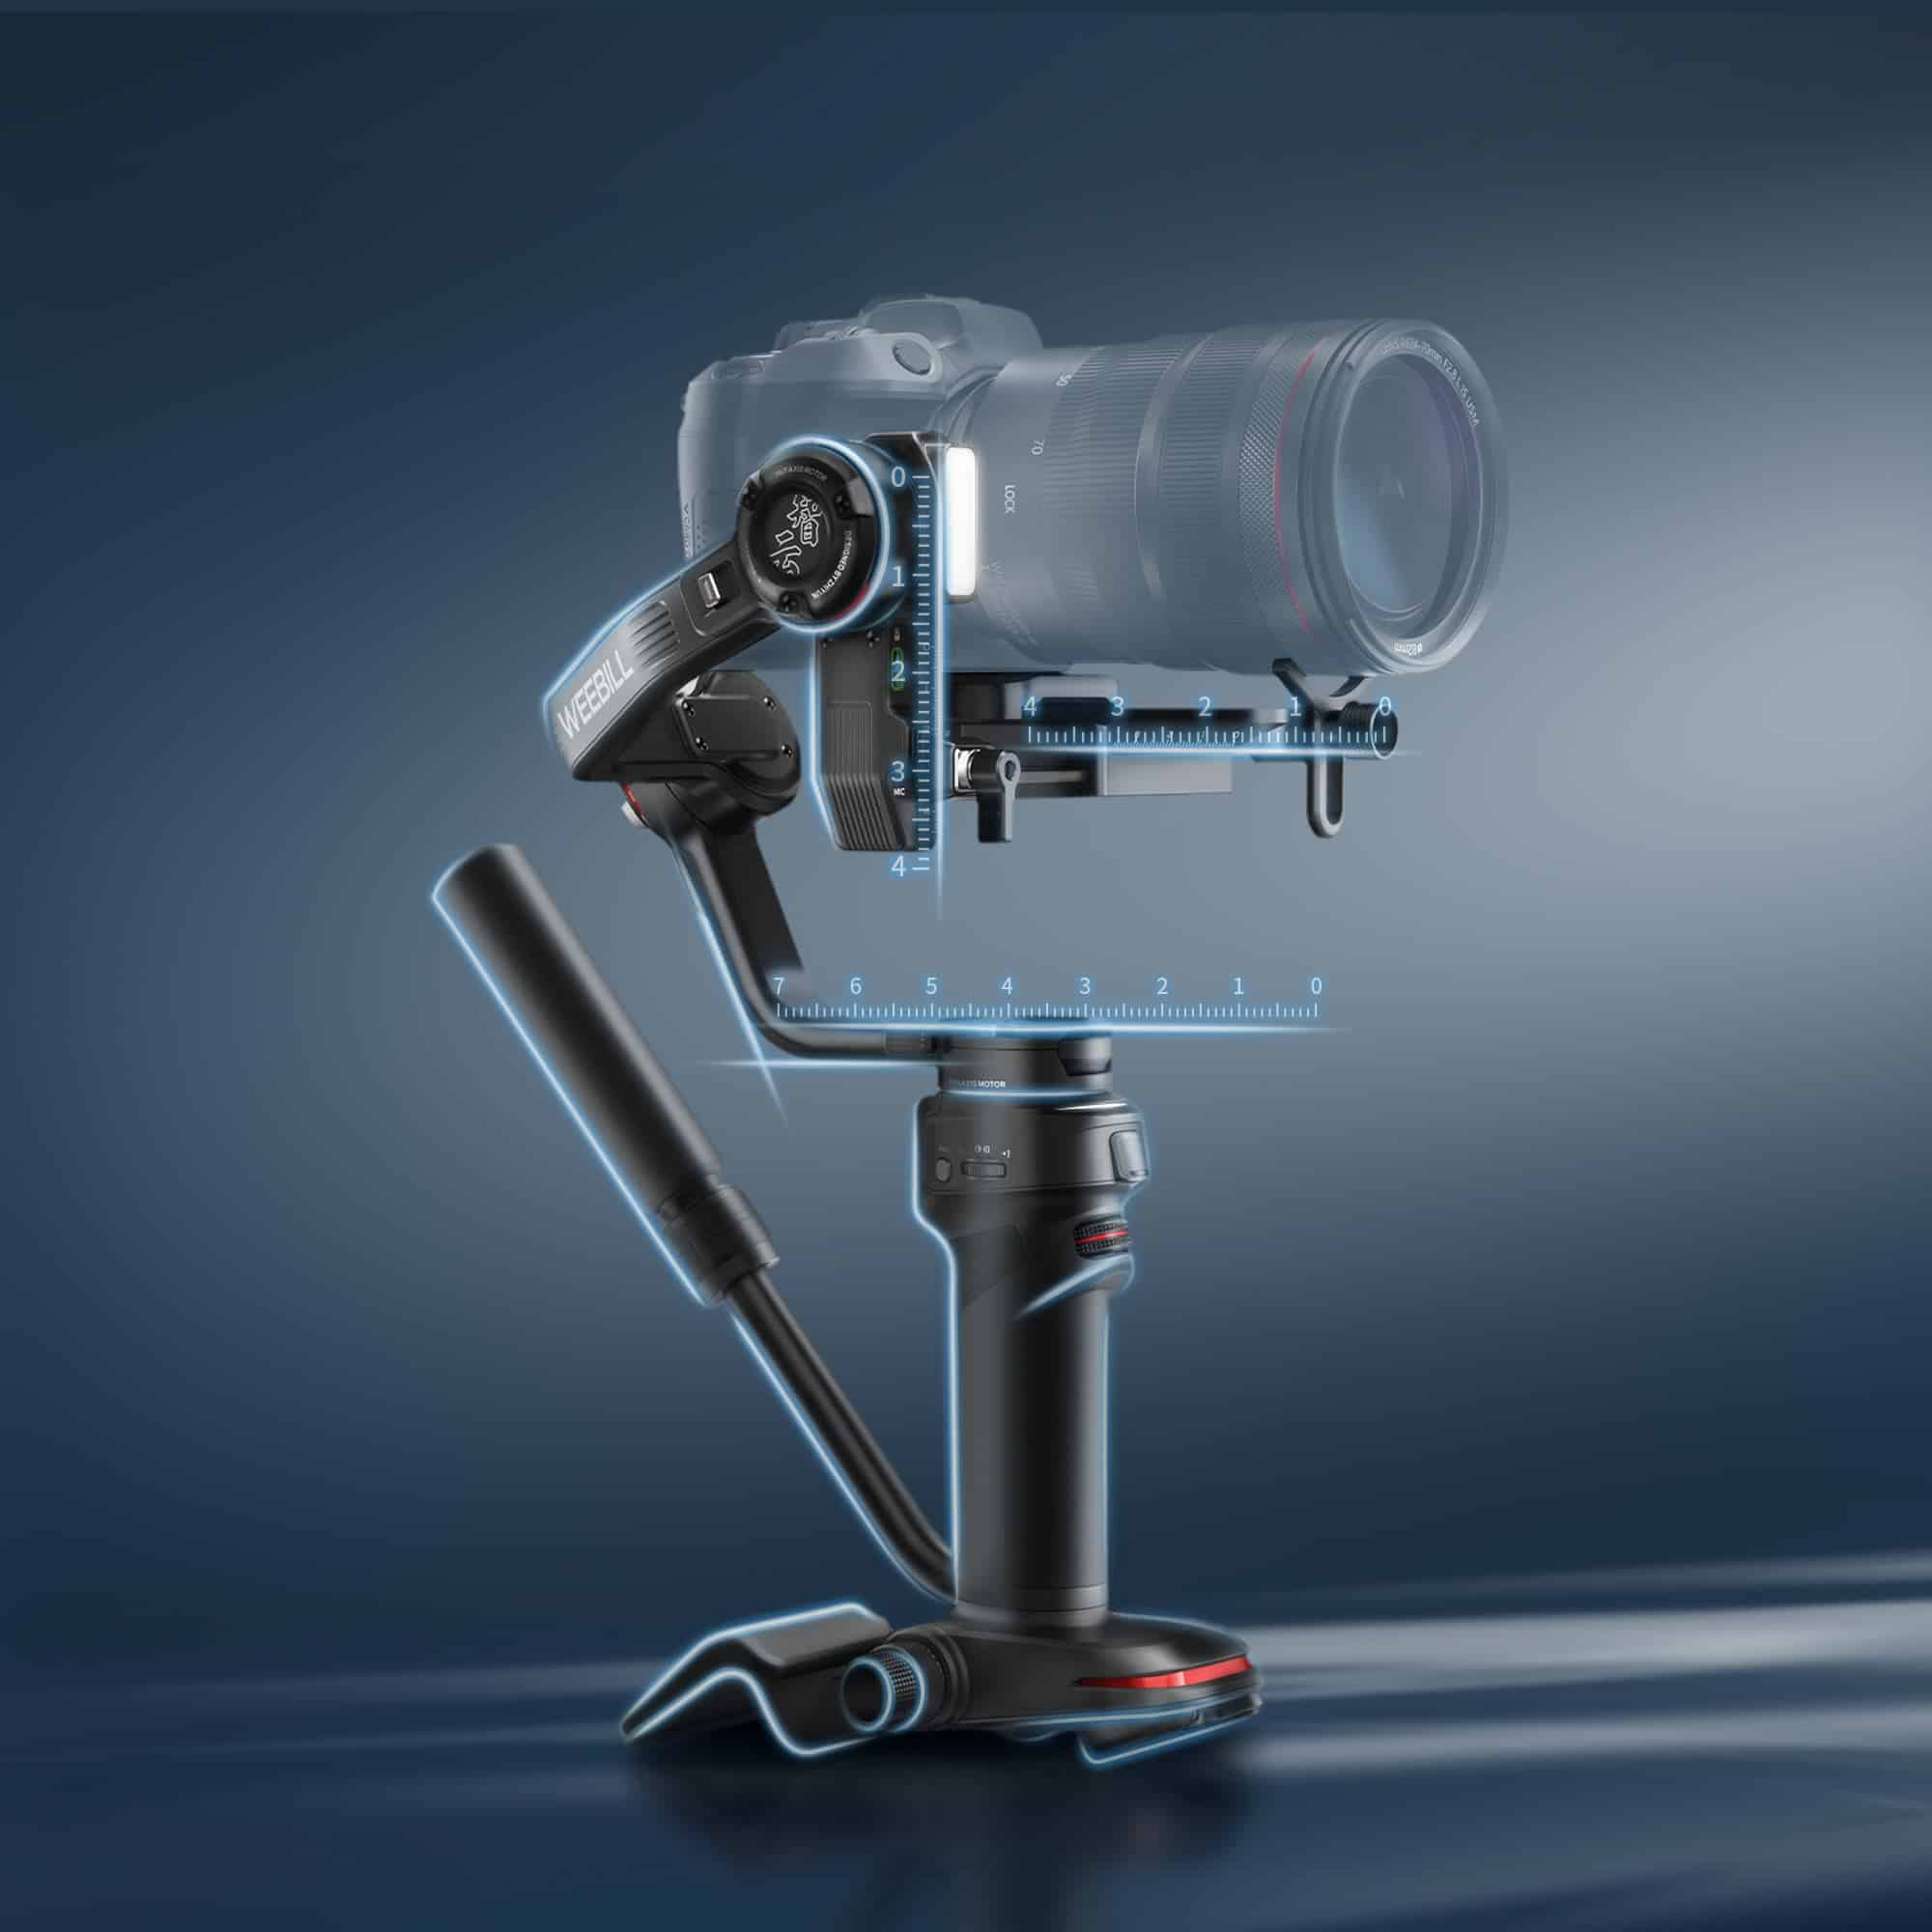 Zhiyun ra mắt gimbal máy ảnh Weebil 3 có tích hợp microphone và đèn LED siêu sáng